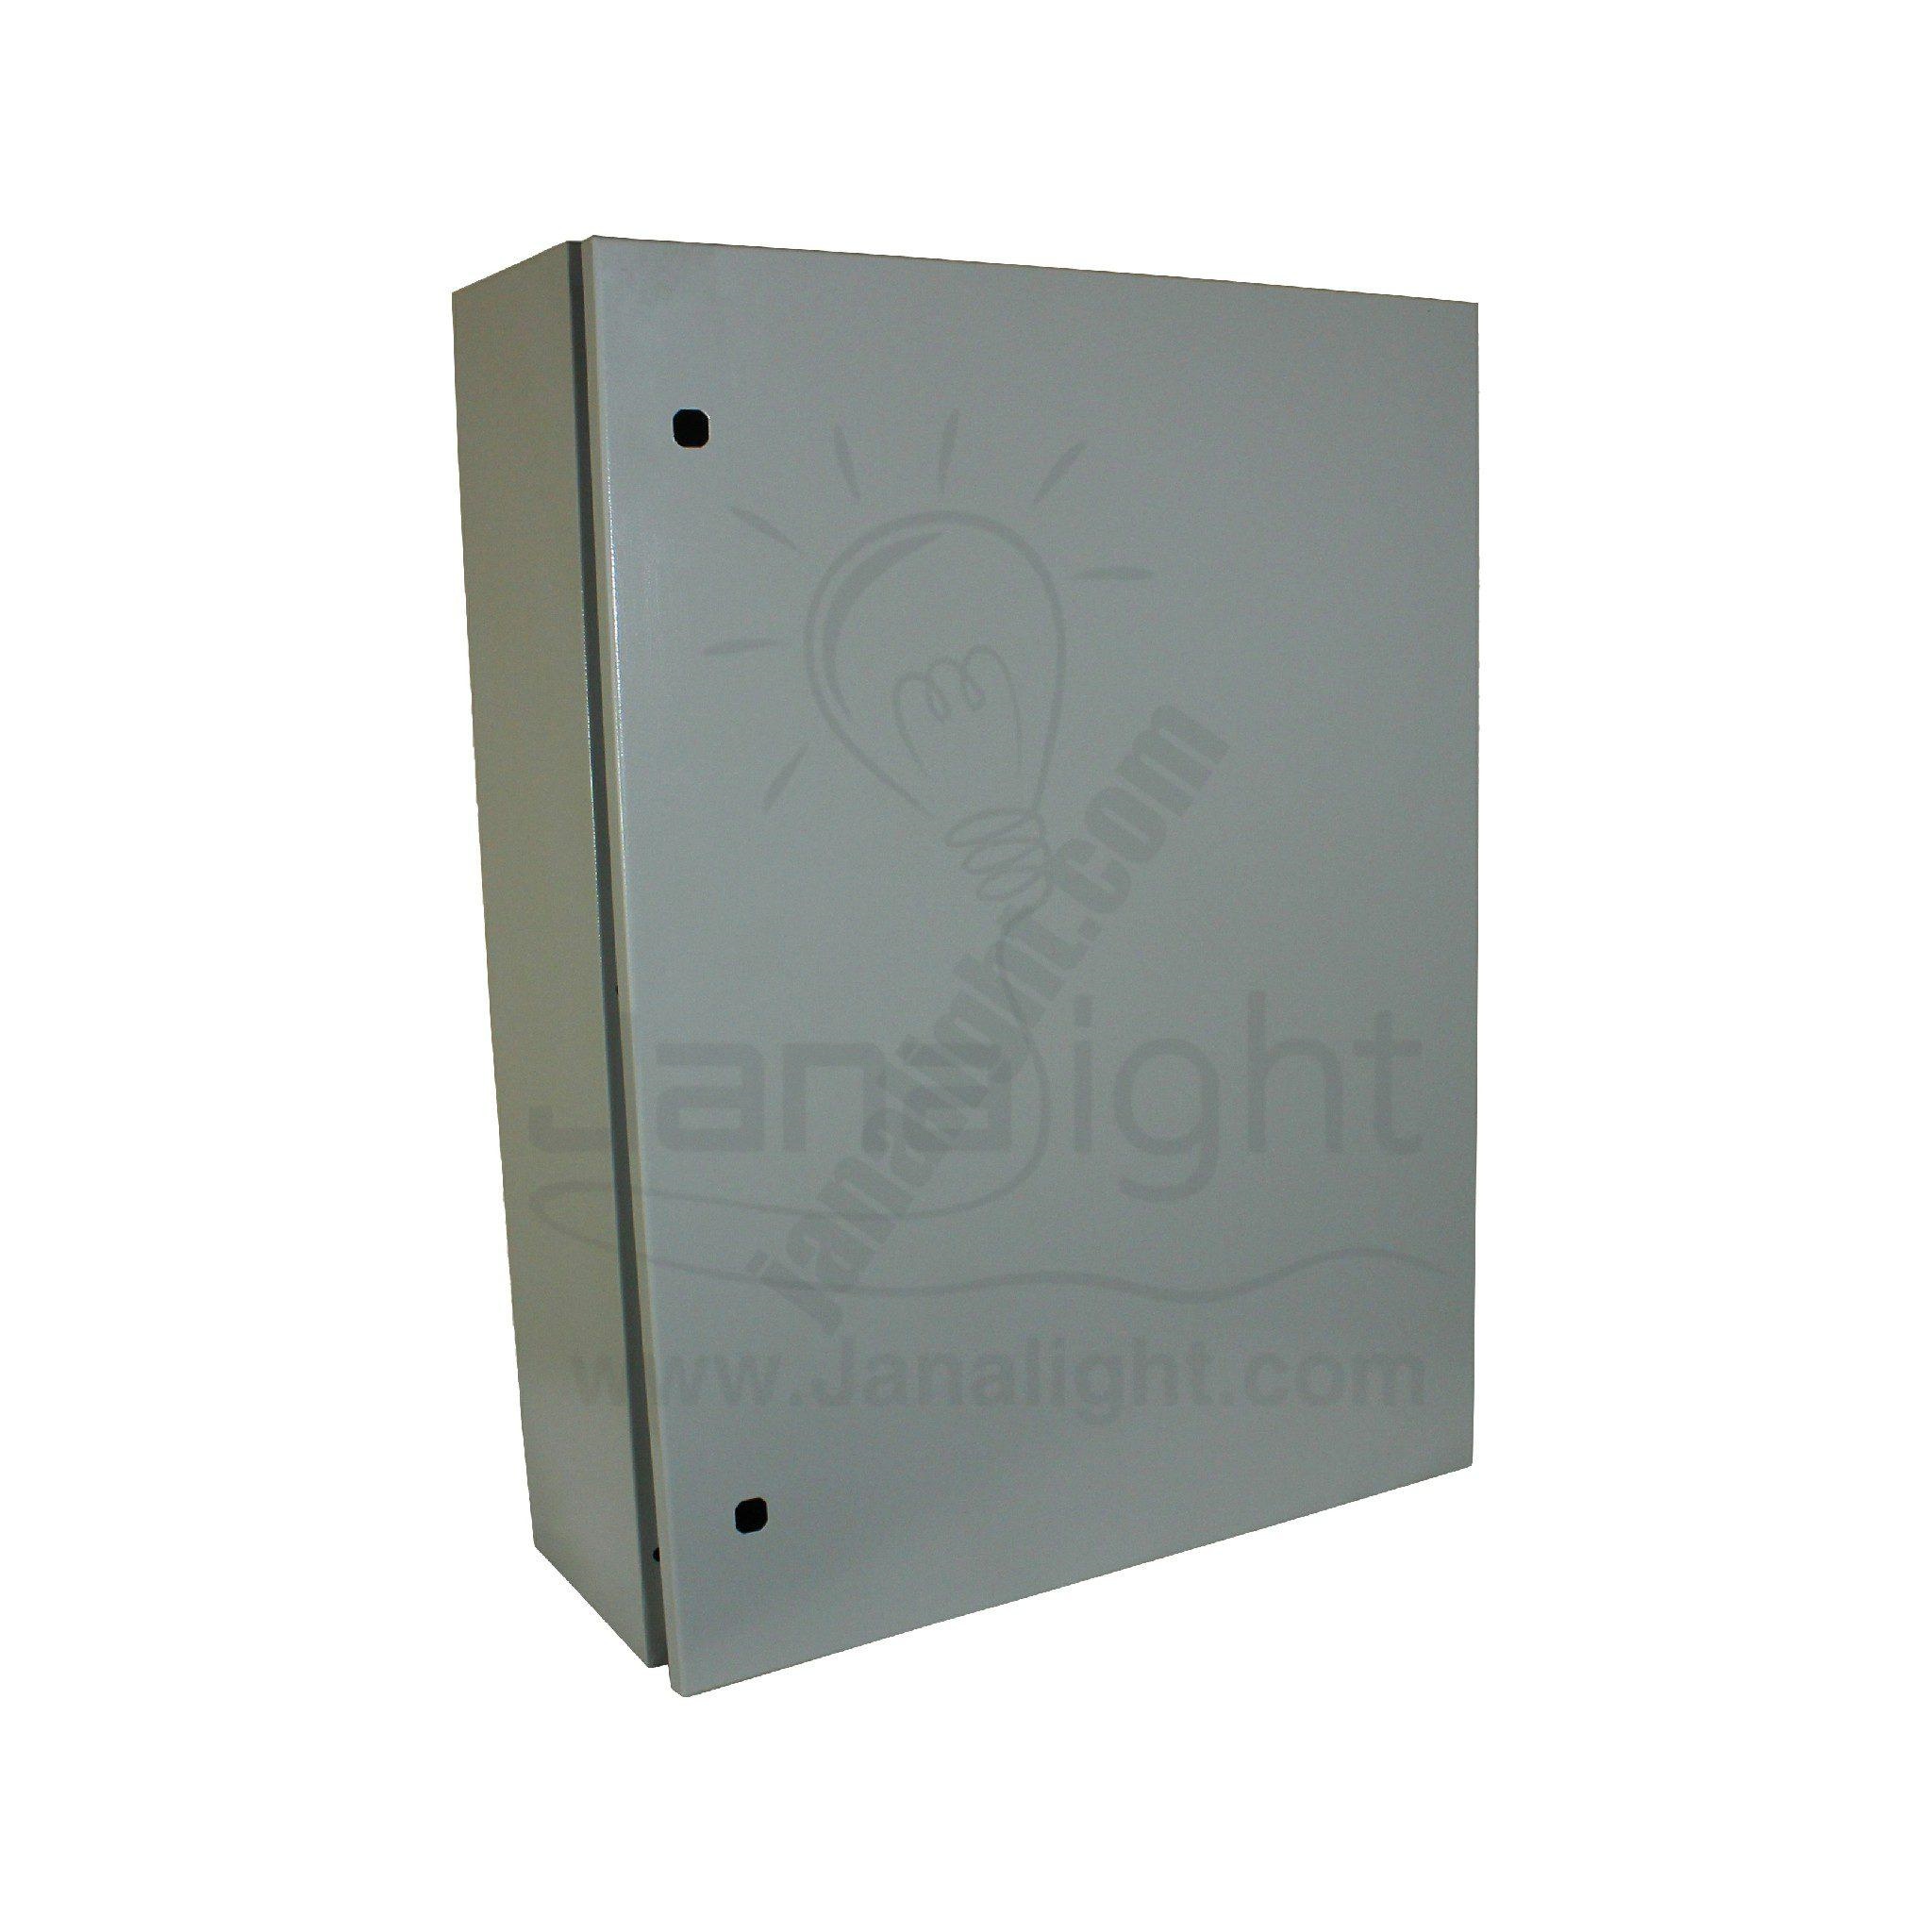 لوحة توزيع هيميل 60x80x25 Cabinet Power Distribution Cabinet 60*80*25 cm Himel